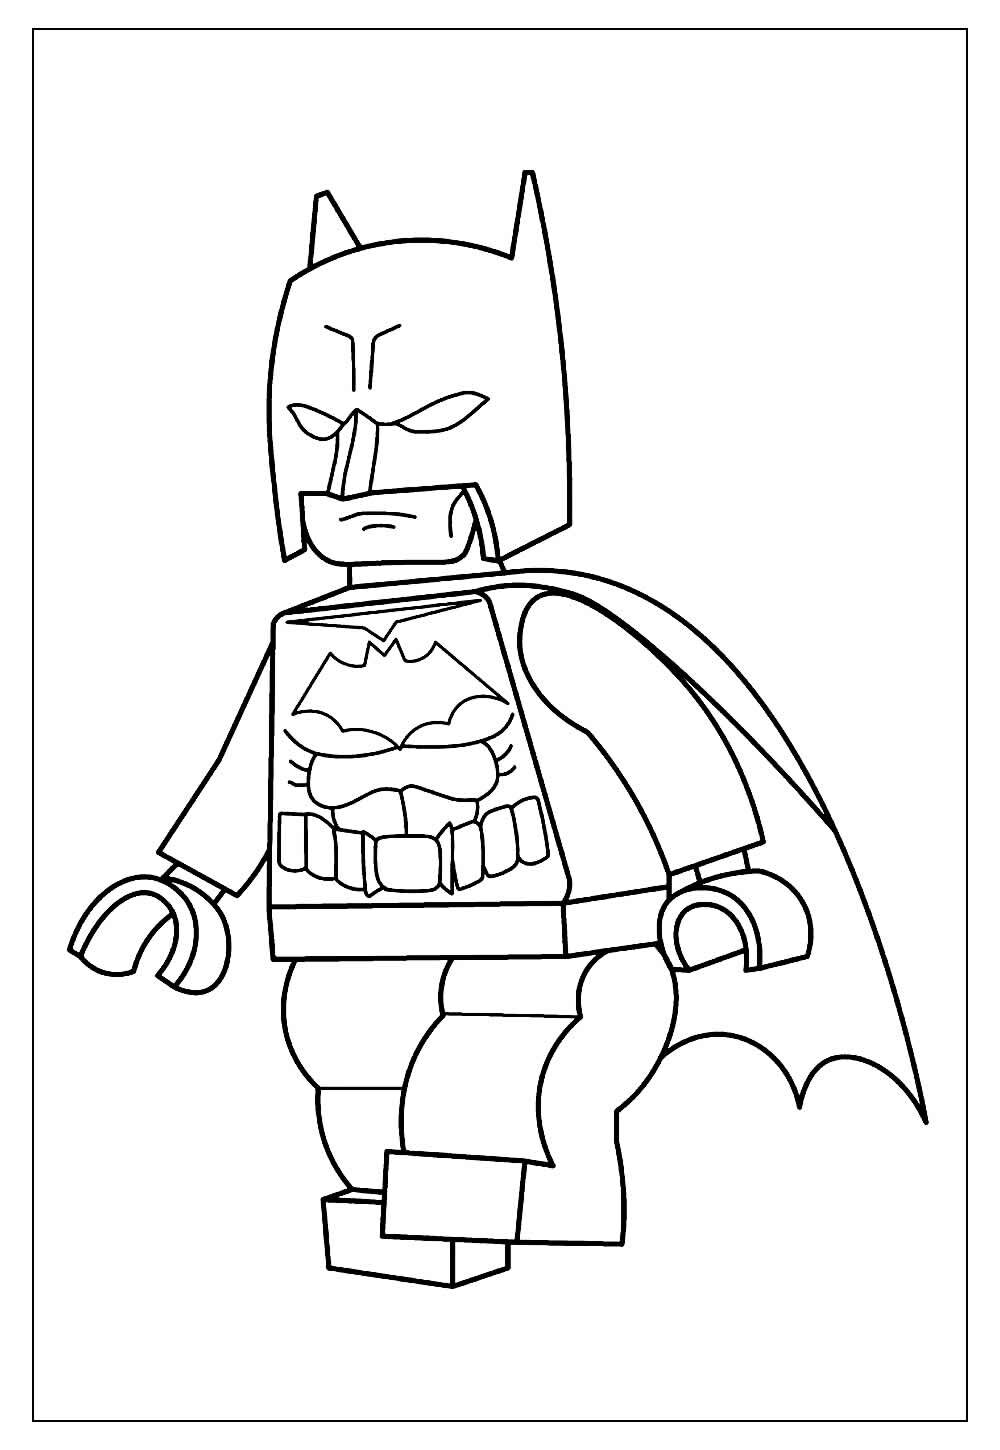 Imagem do Batman Lego para pintar e colorir